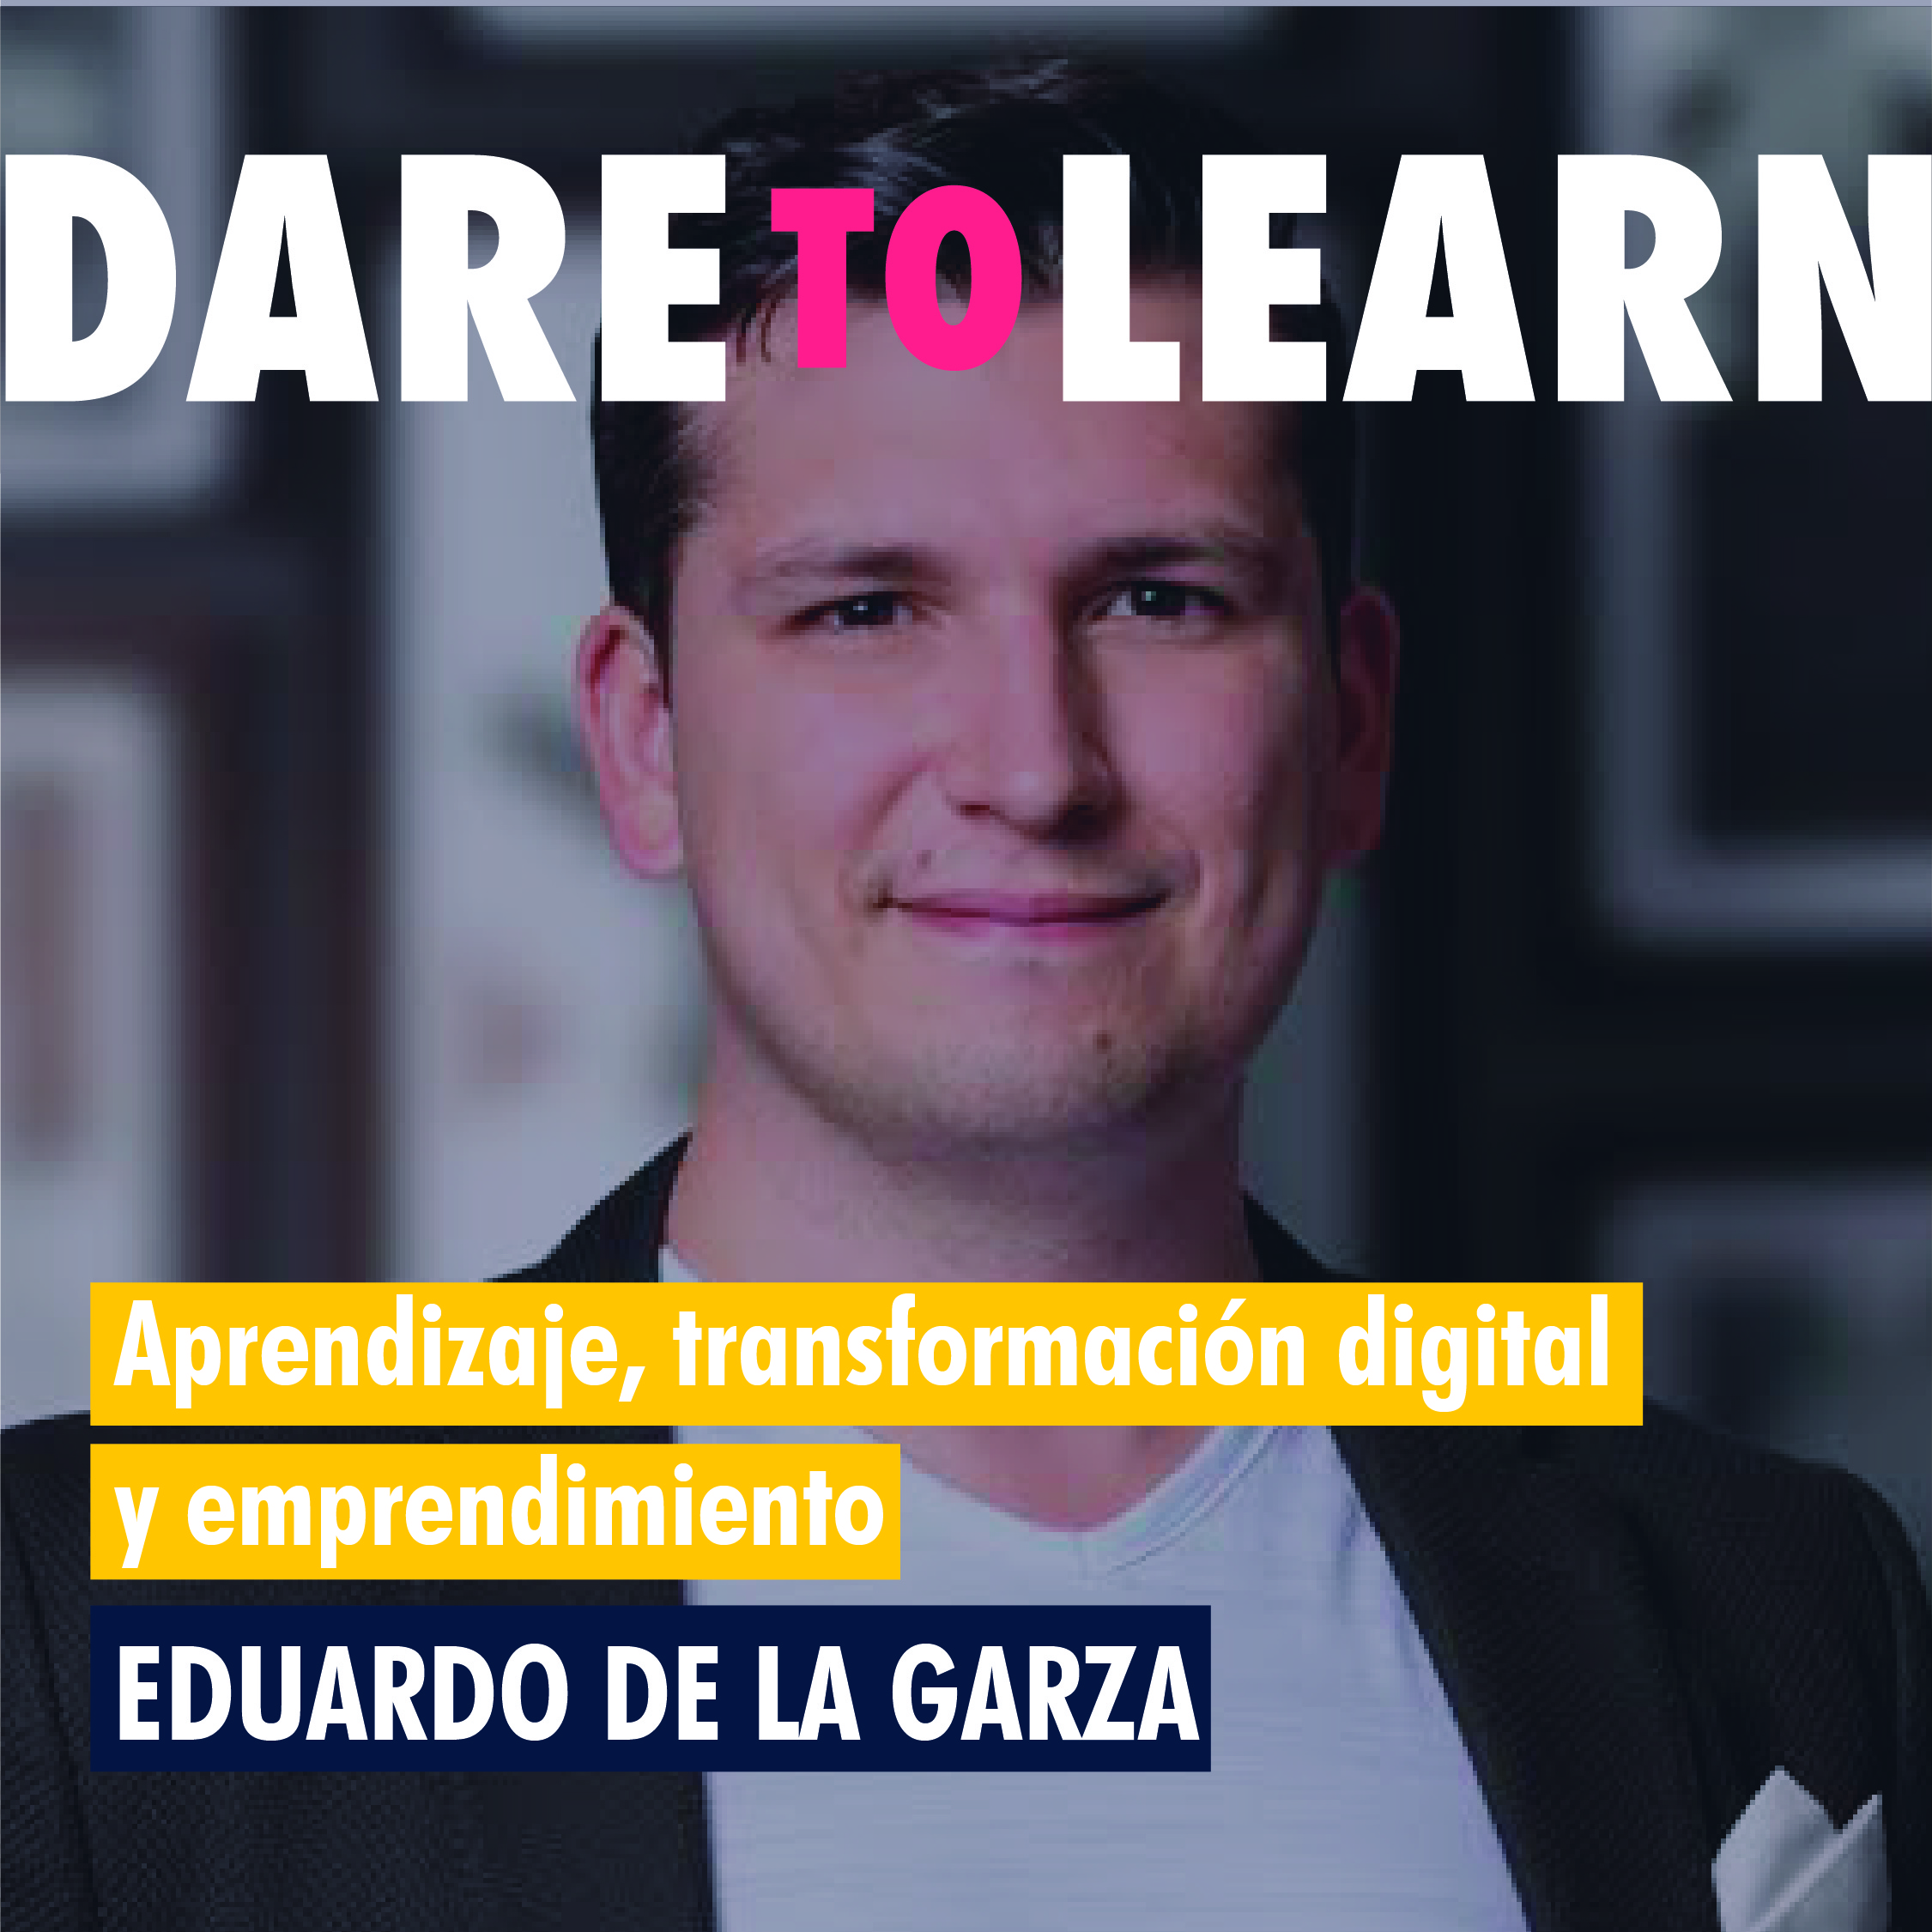 Eduardo de la Garza – Aprendizaje, transformación digital y emprendimiento.